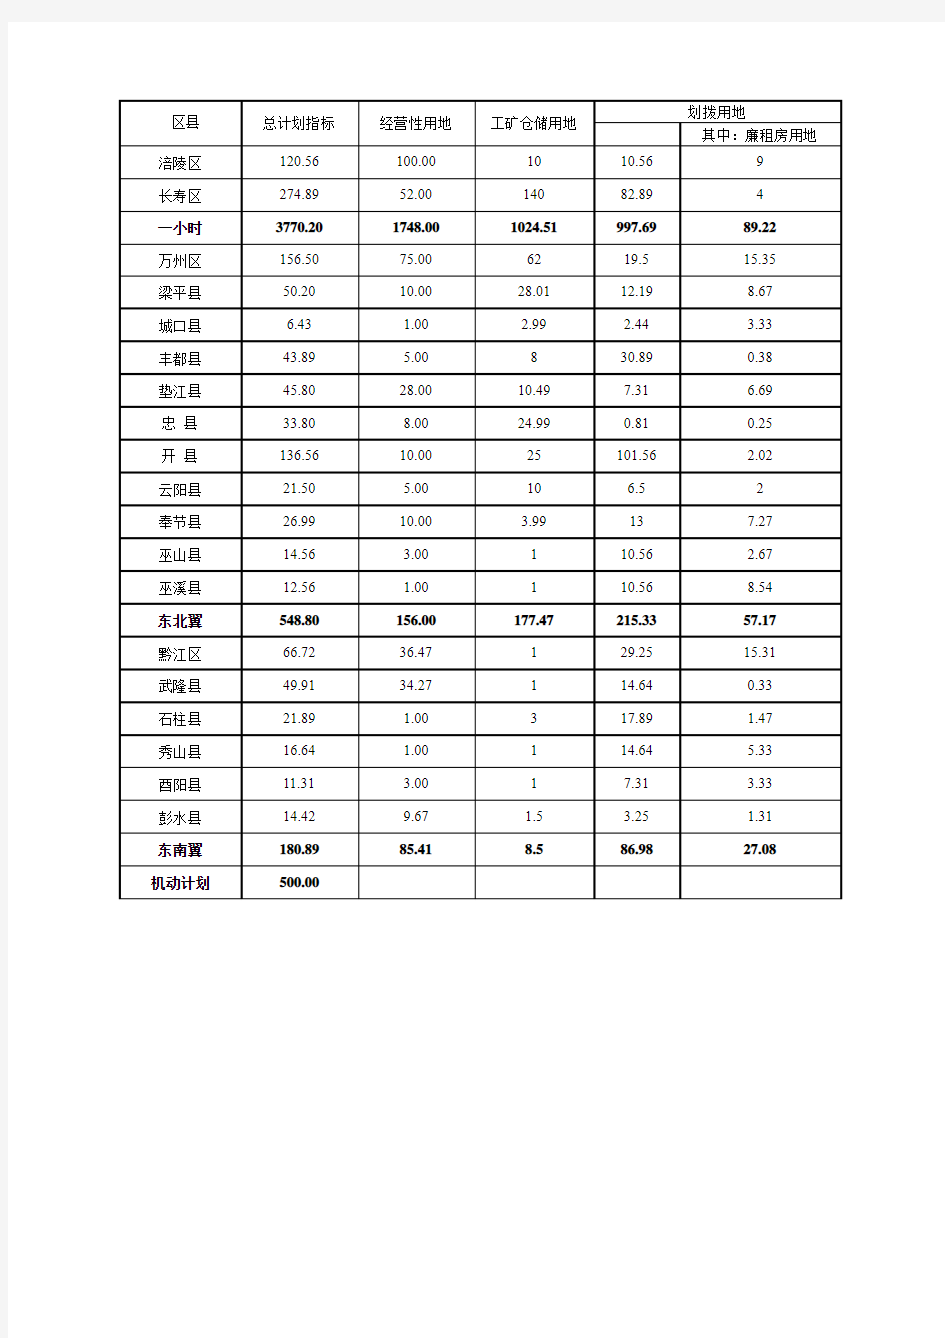 重庆市2009年度土地供应计划指标分解表